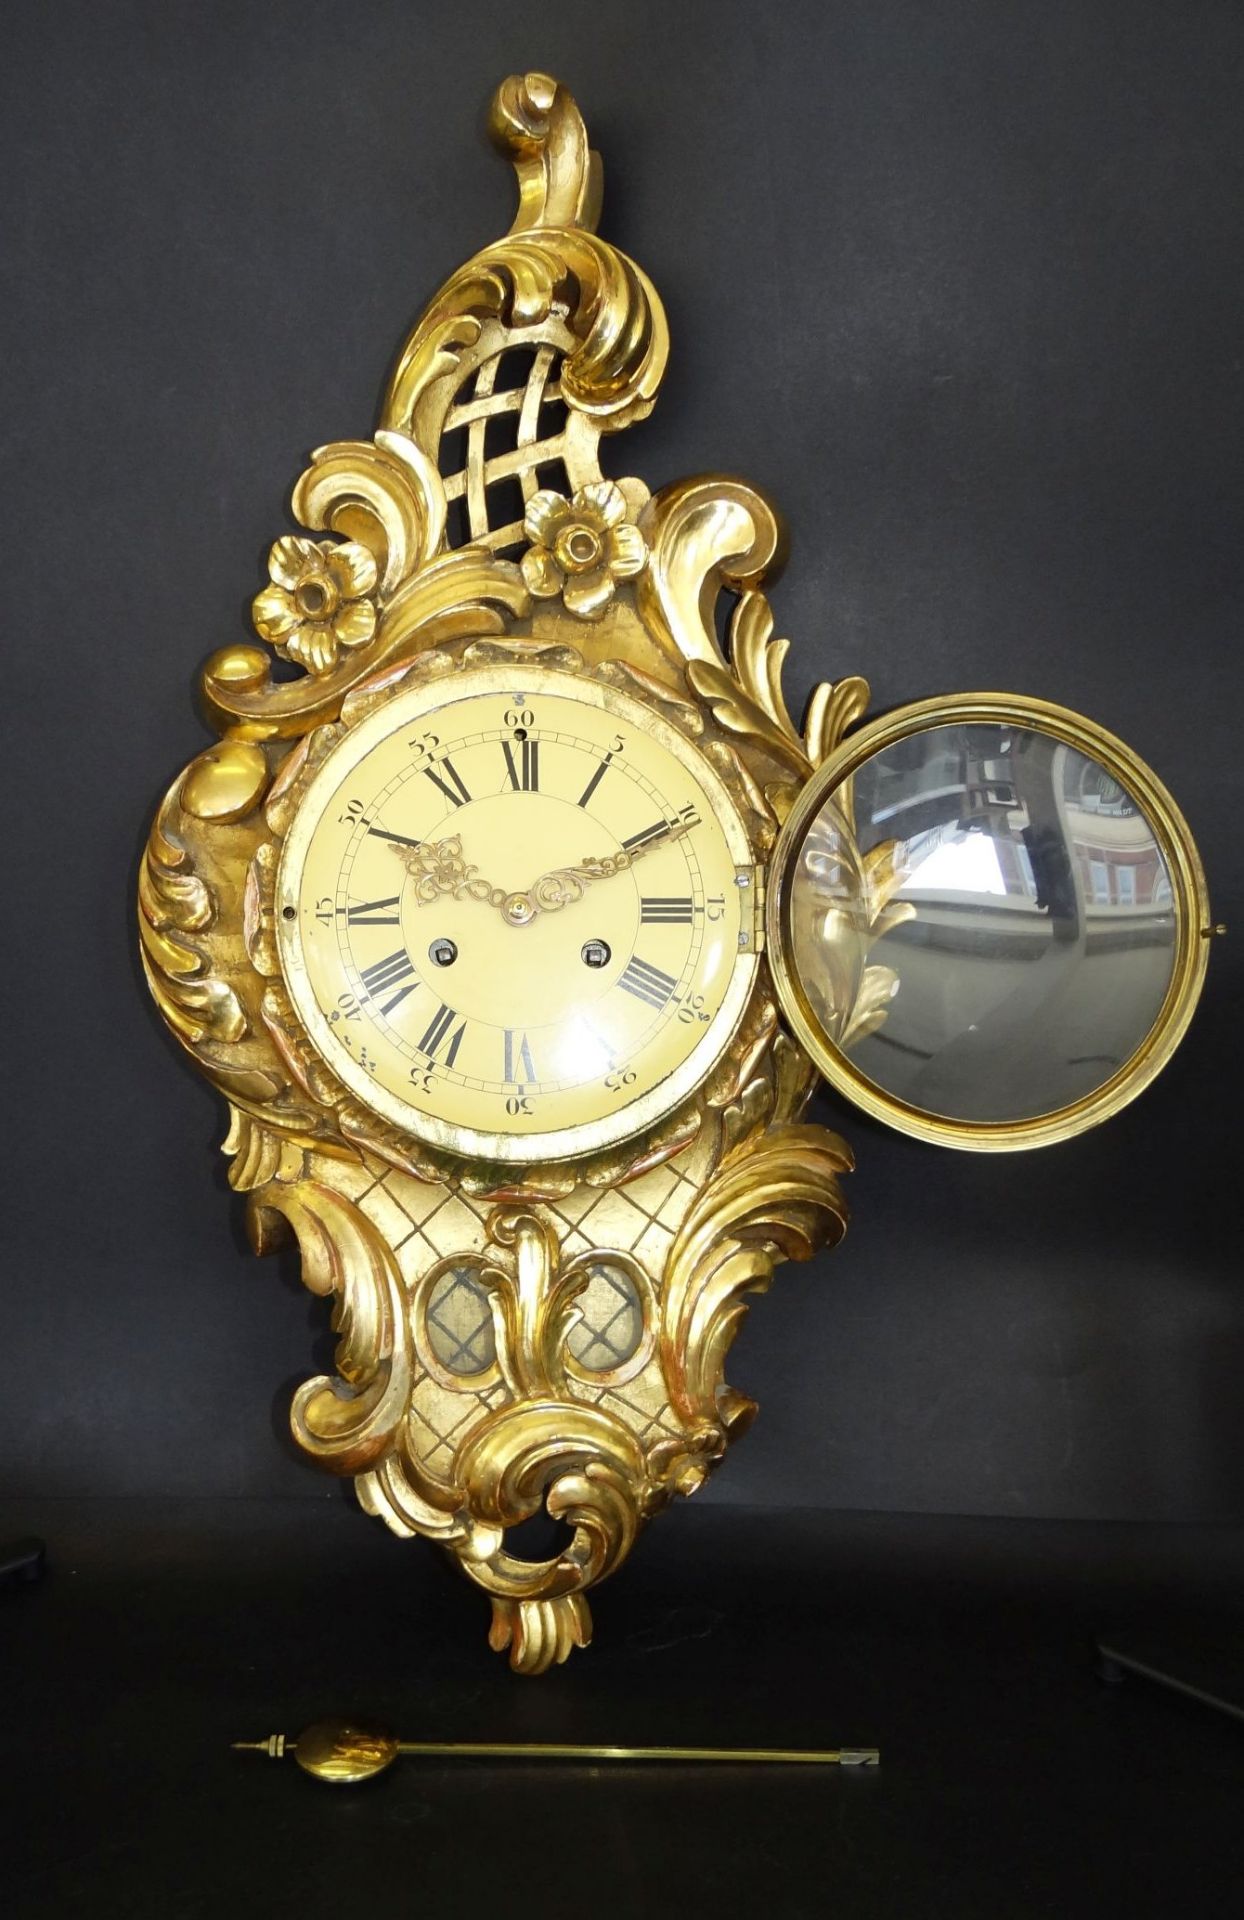 gr. Kartell-Uhr, Holz vergoldet, , H-62 cm, B-32 cm, guter Zustand, leider falsches , zu langes - Bild 7 aus 10